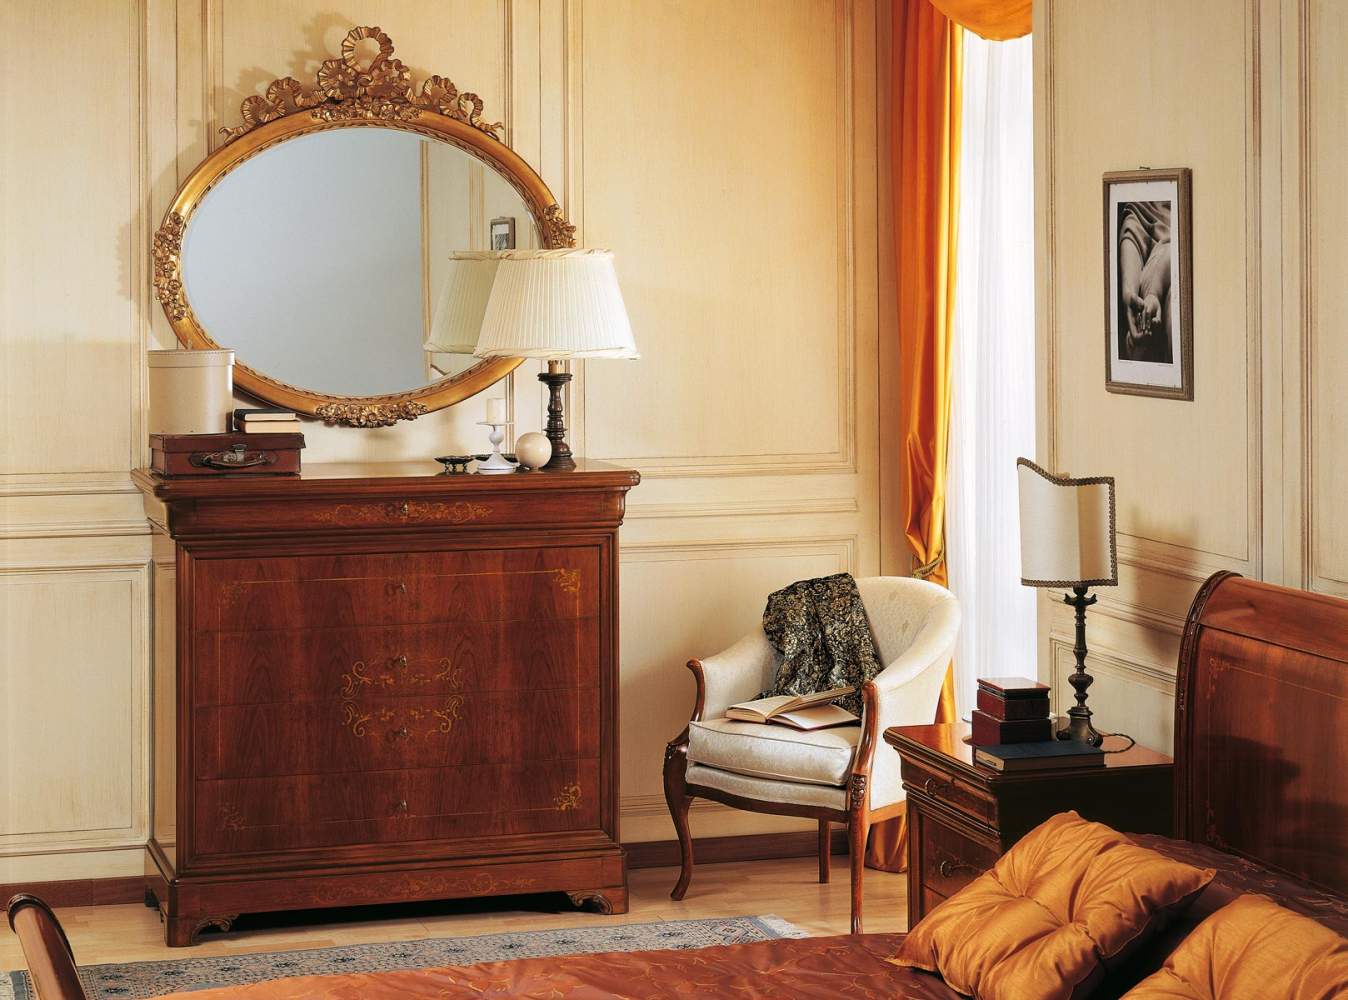 Camera da letto 800 francese, comò intarsiato e specchiera dorata